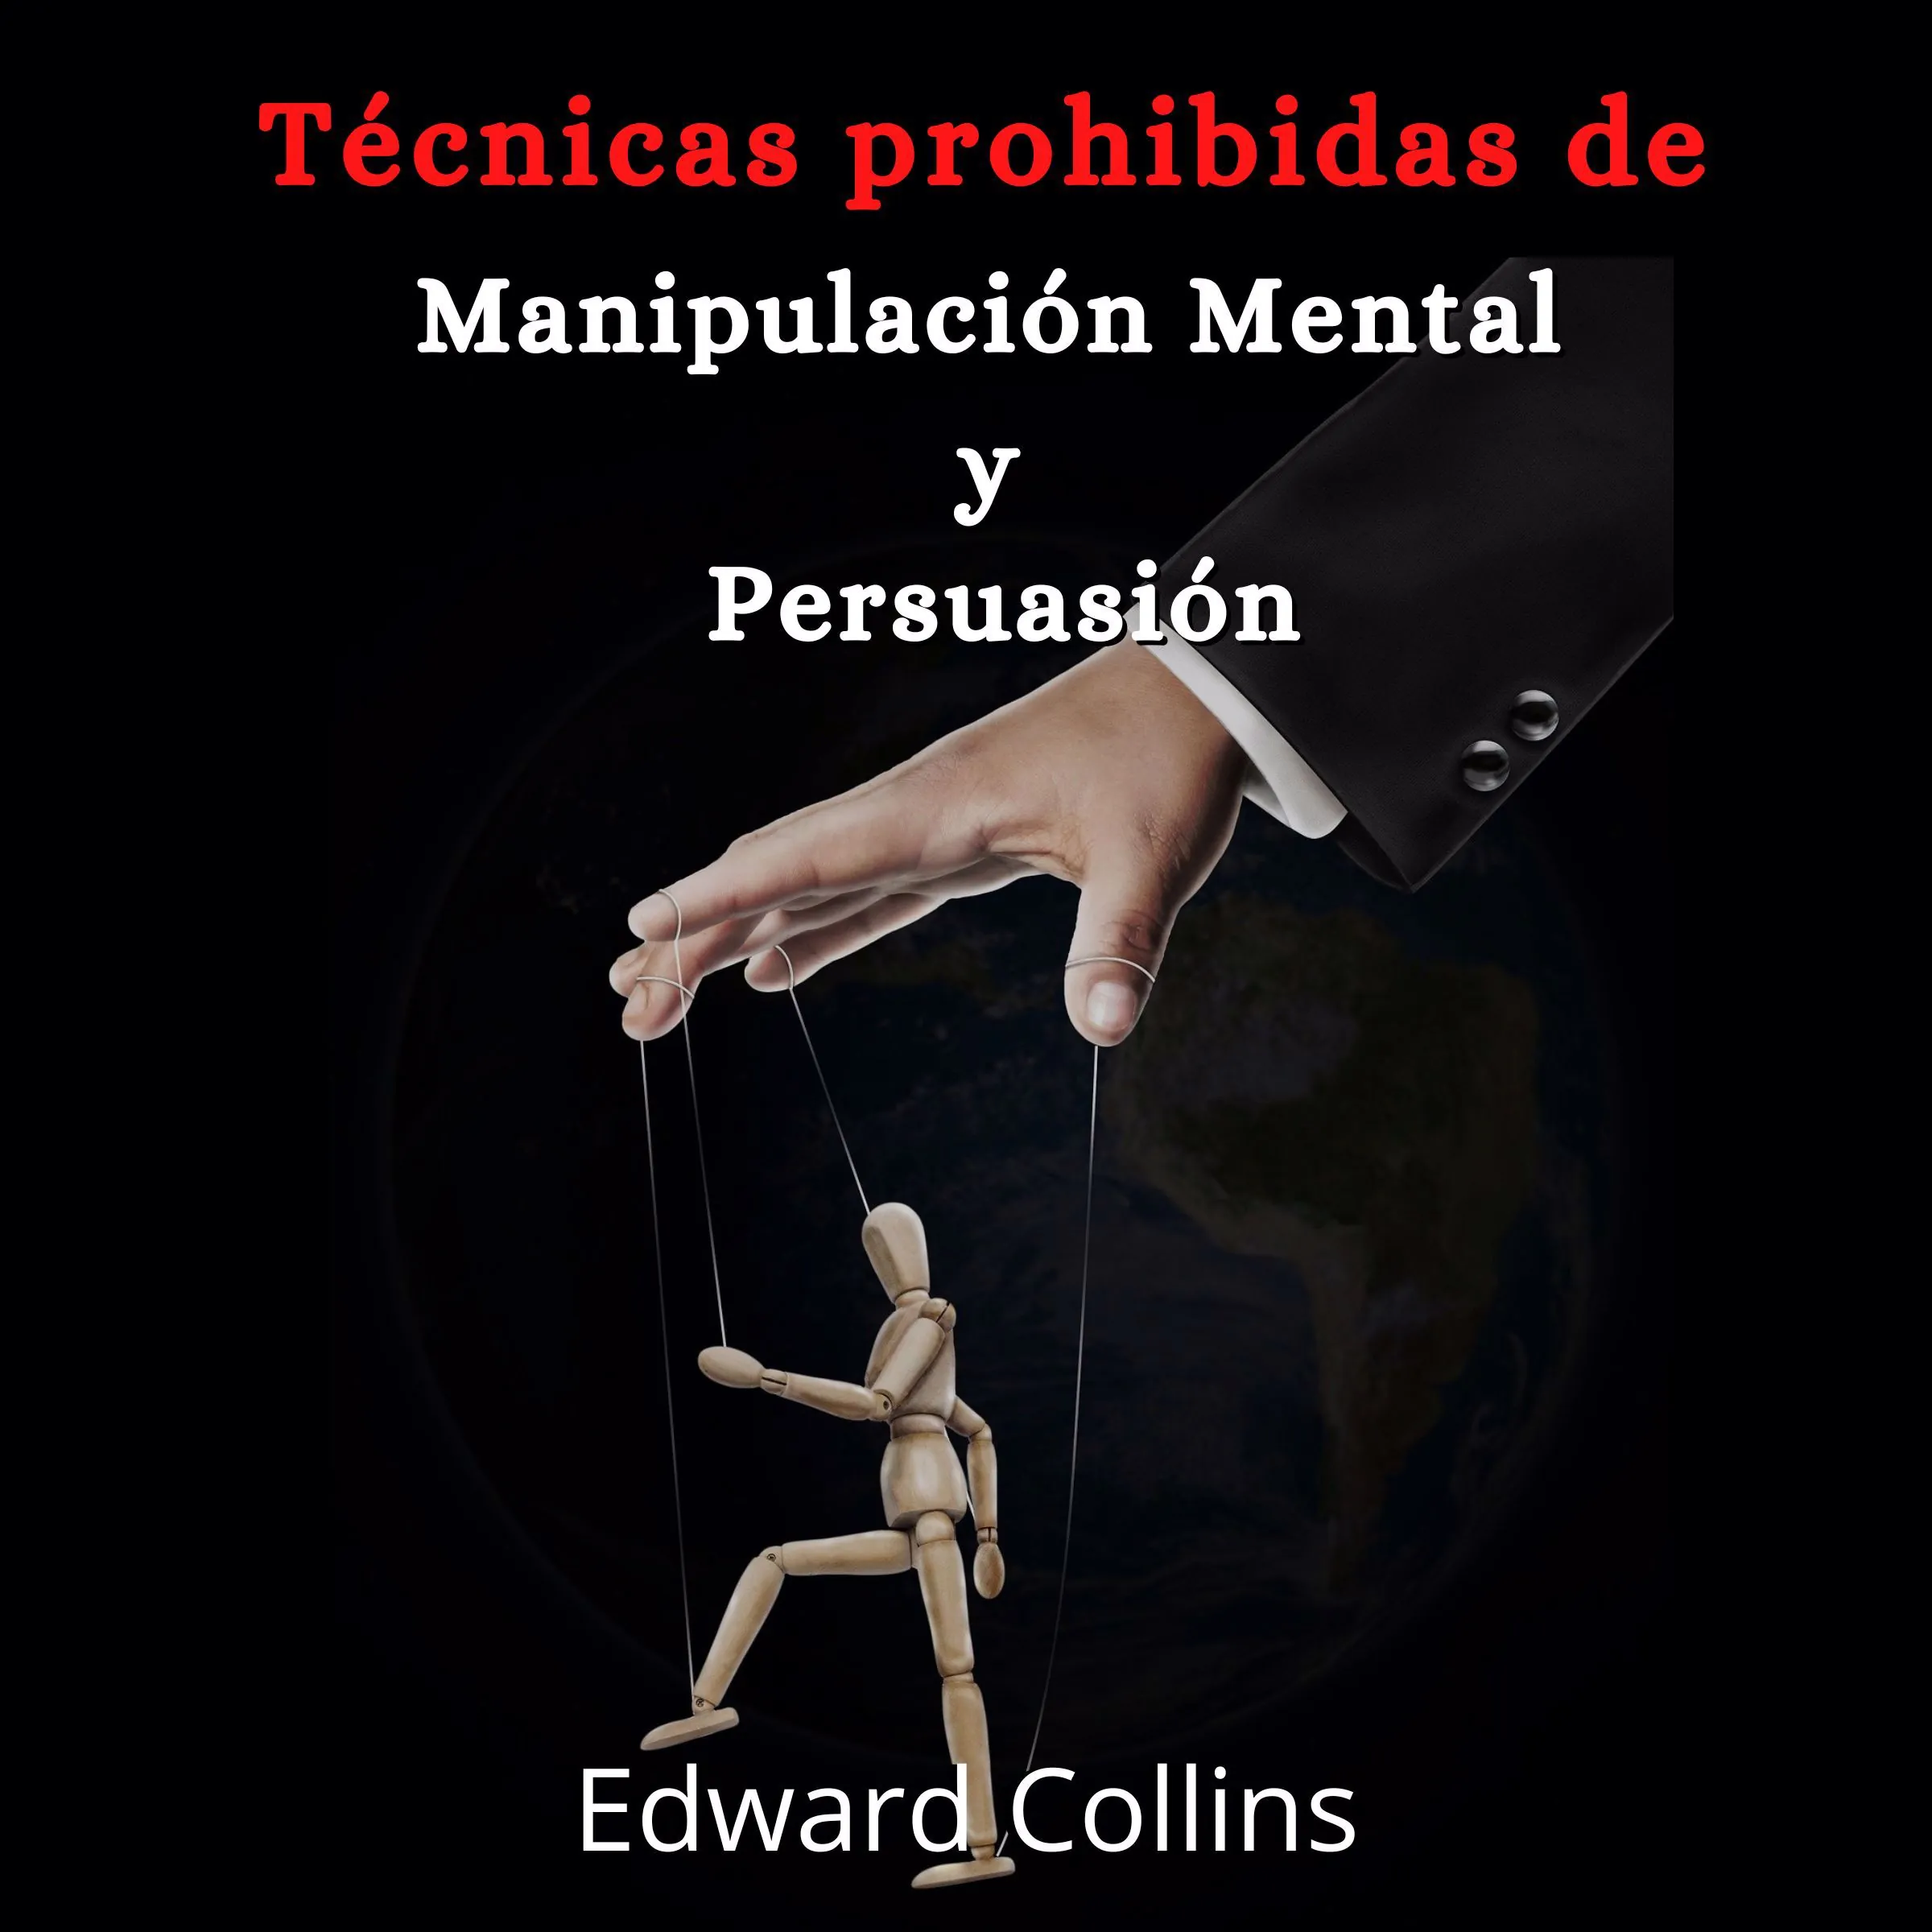 Tecnicas prohibidas de manipulacion mental y persuasion Audiobook by Edward Collins